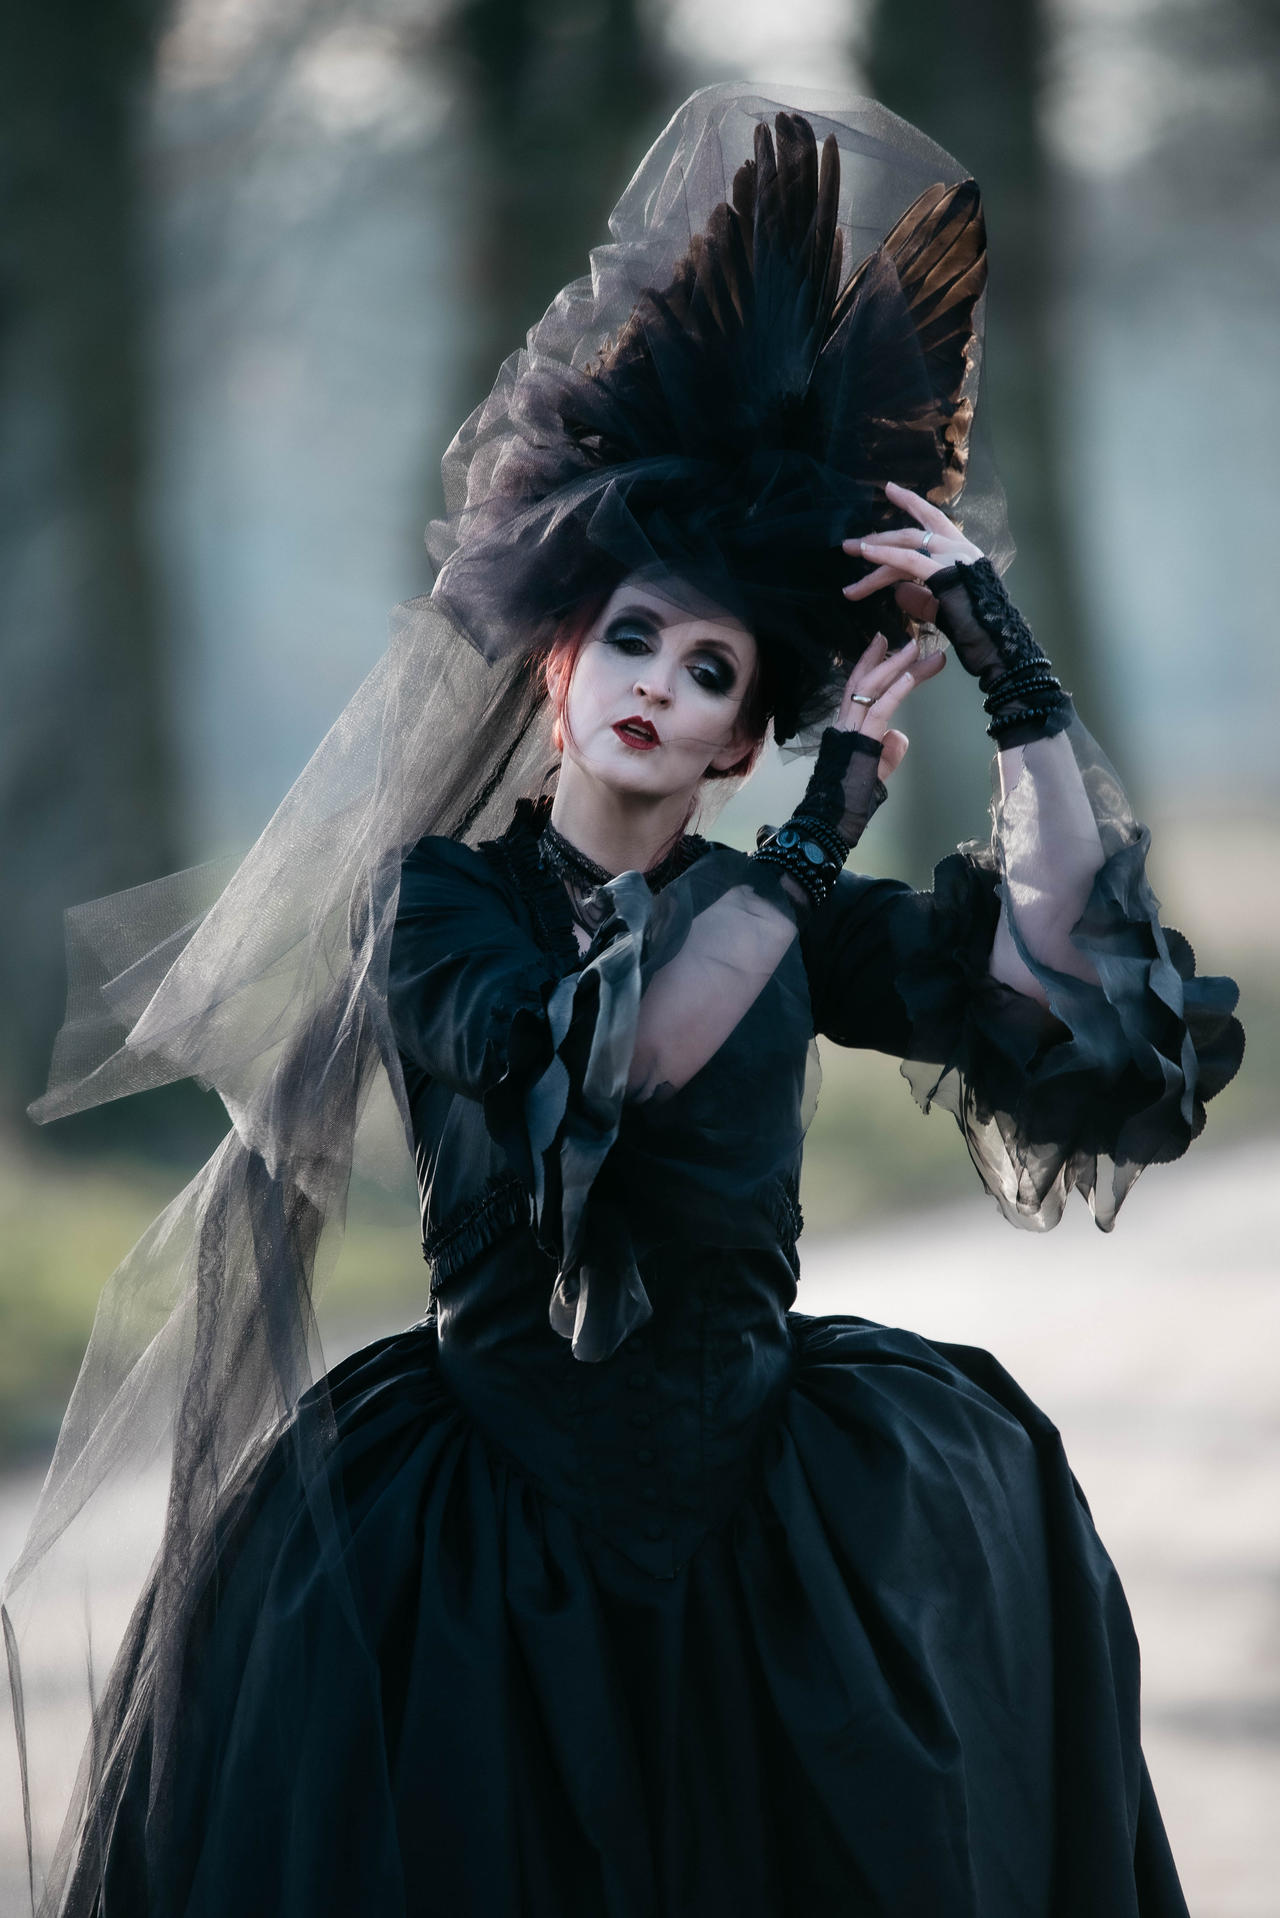 Stock - Raven queen portrait pose romantic dance by S-T-A-R-gazer on ...